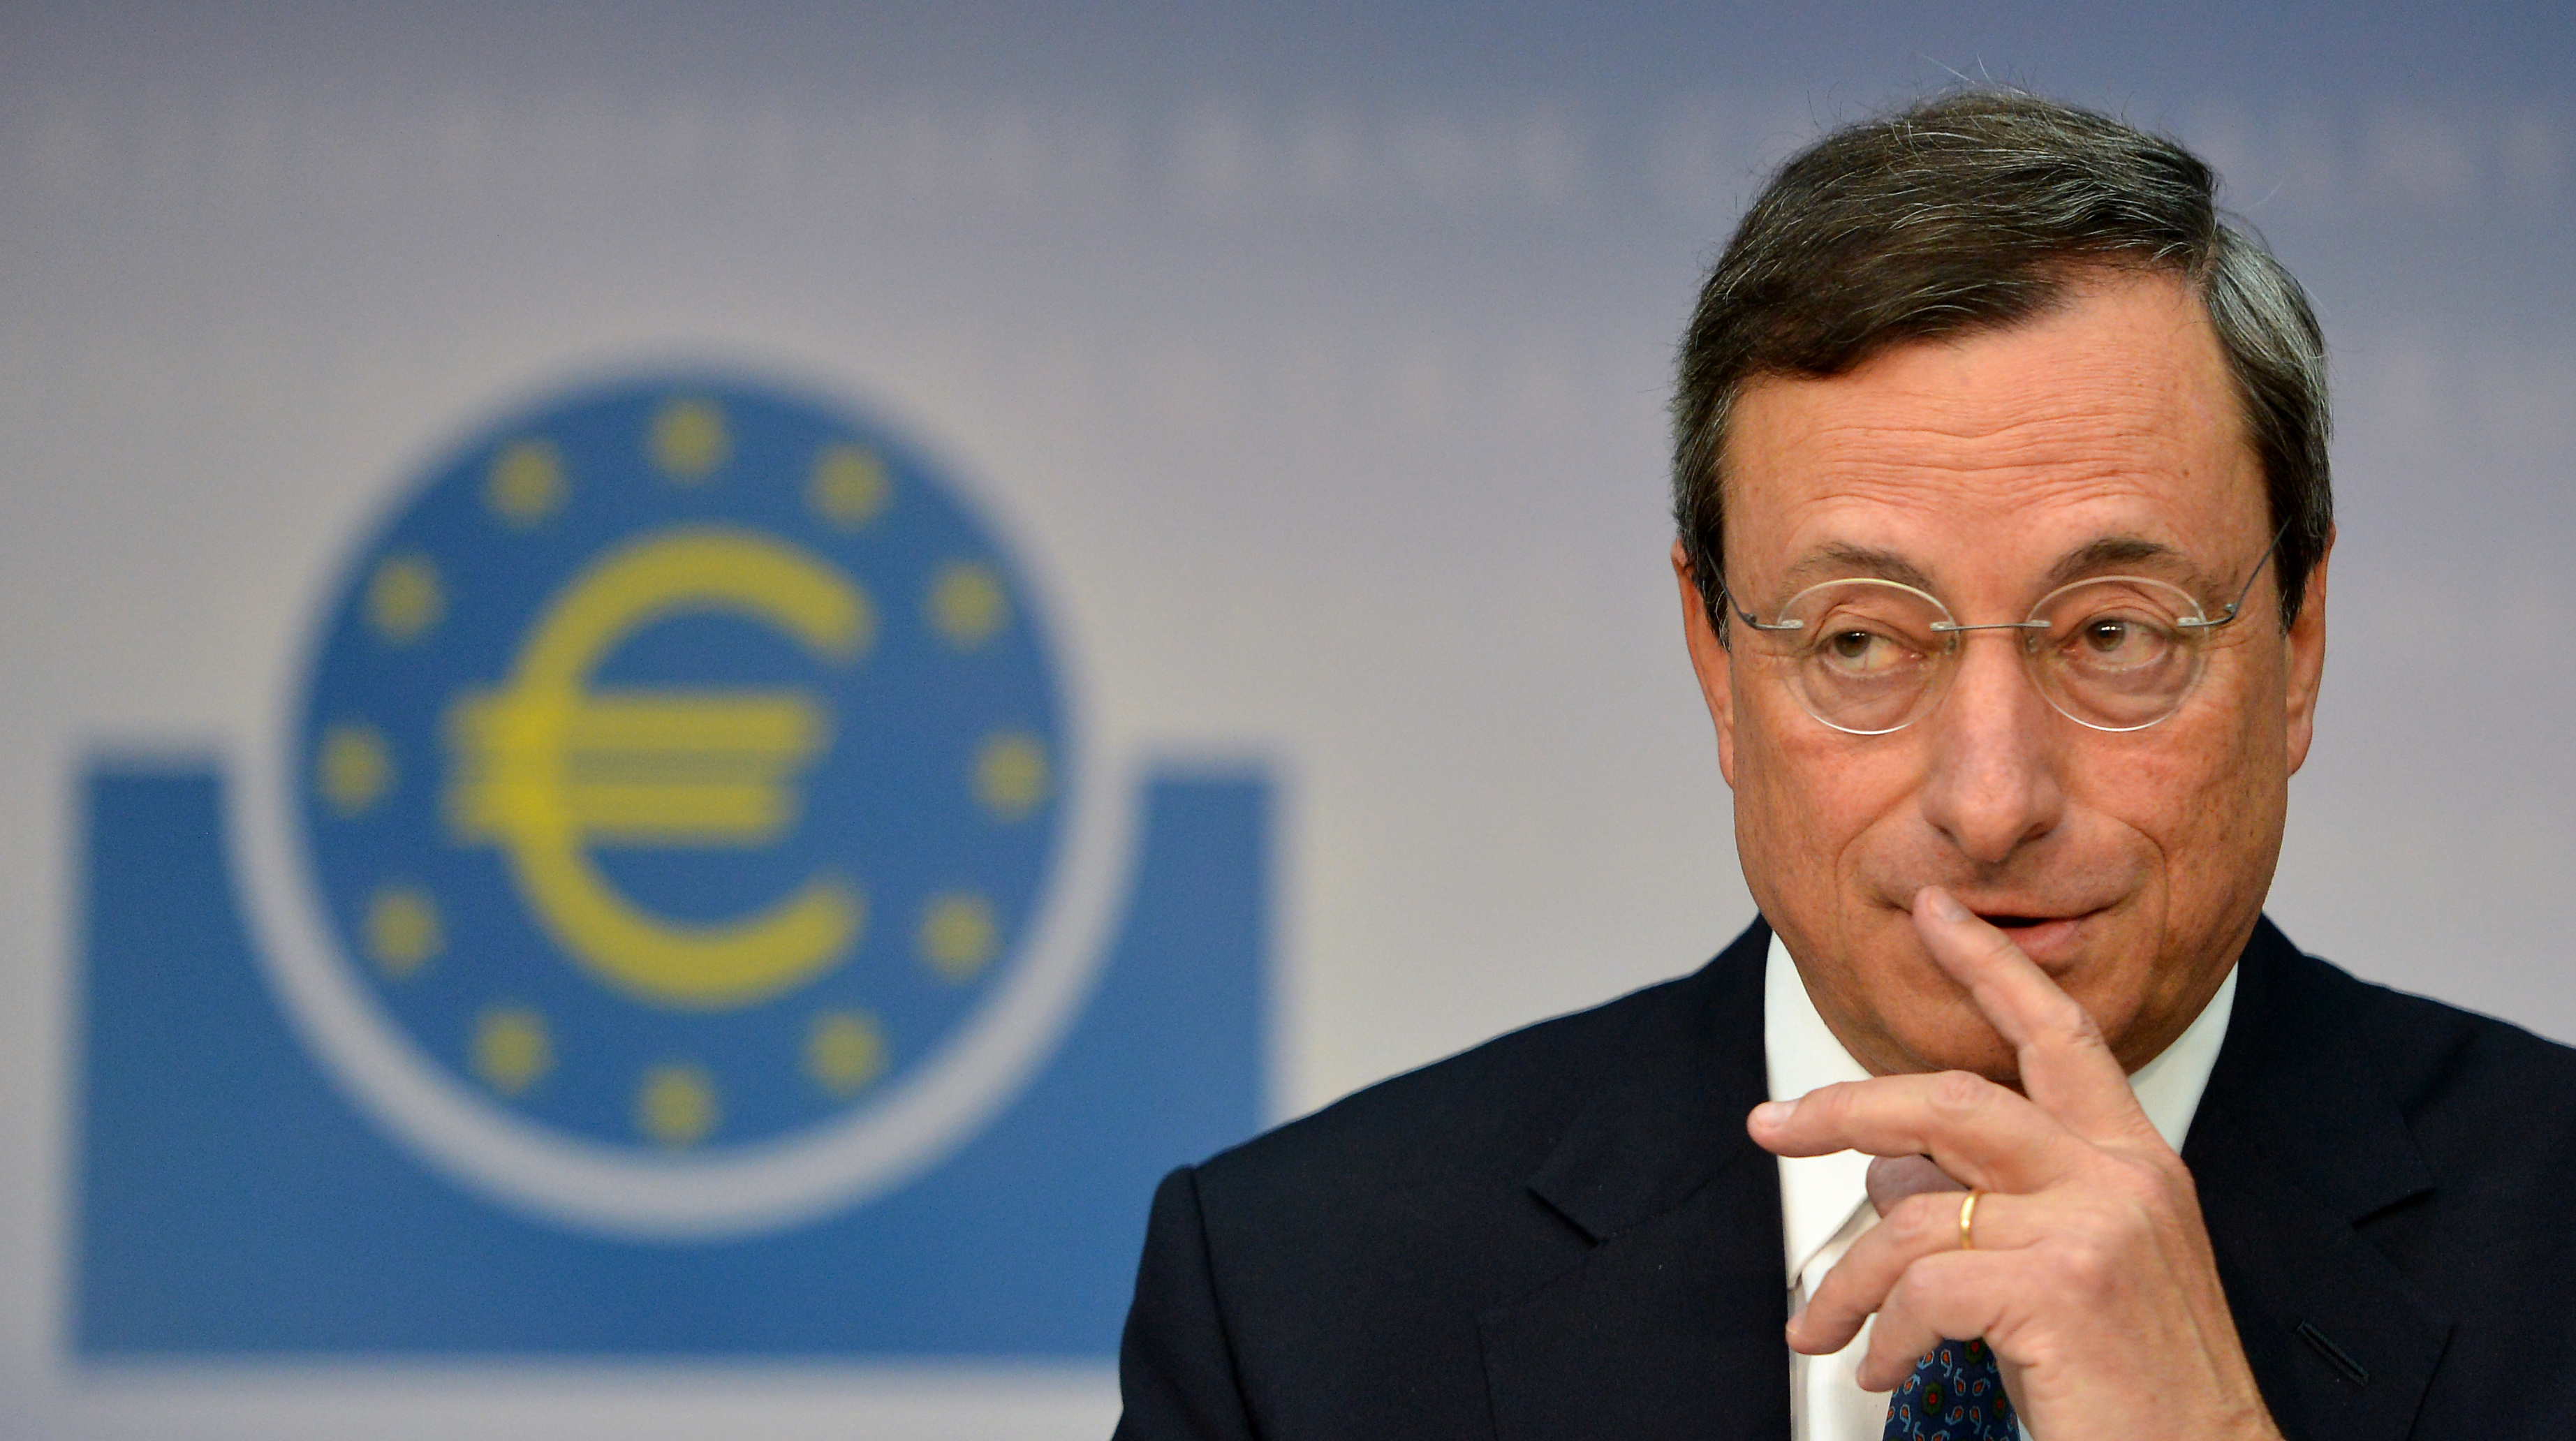 Draghi fährt hochumstrittenen EZB-Kurs fort: Noch nicht an der Zeit für Änderung des Anleihekaufprogramms